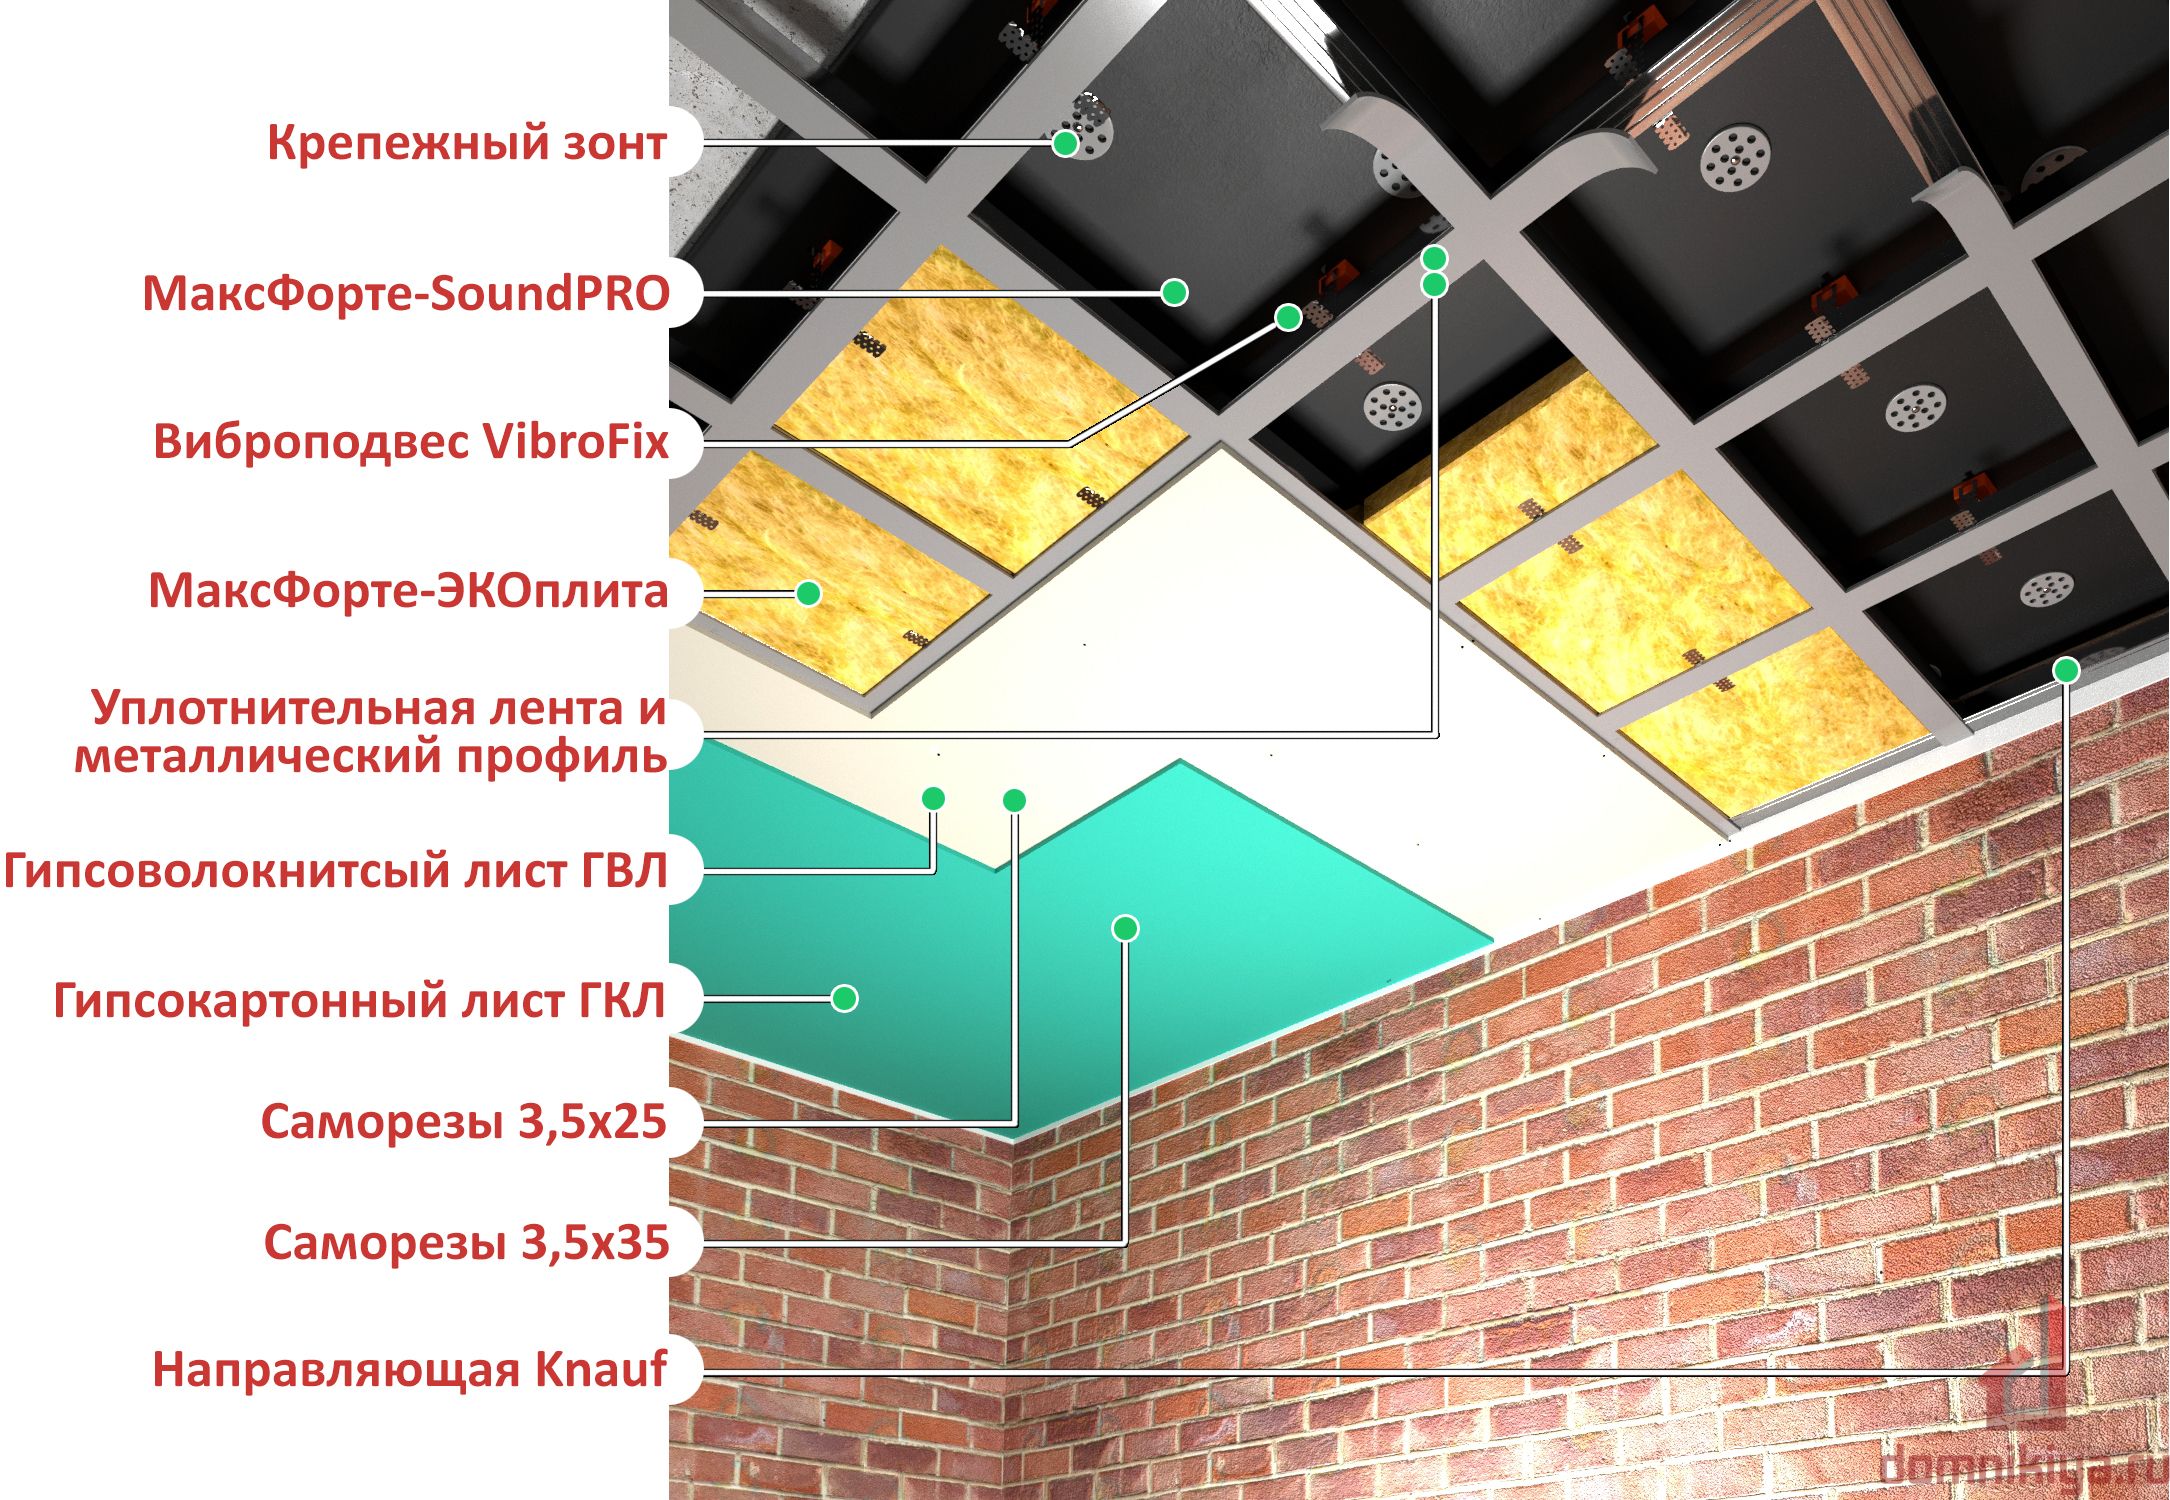 Шумоизоляция потолка в квартире под натяжной потолок: как сделать, какую выбрать | 5domov.ru - статьи о строительстве, ремонте, отделке домов и квартир